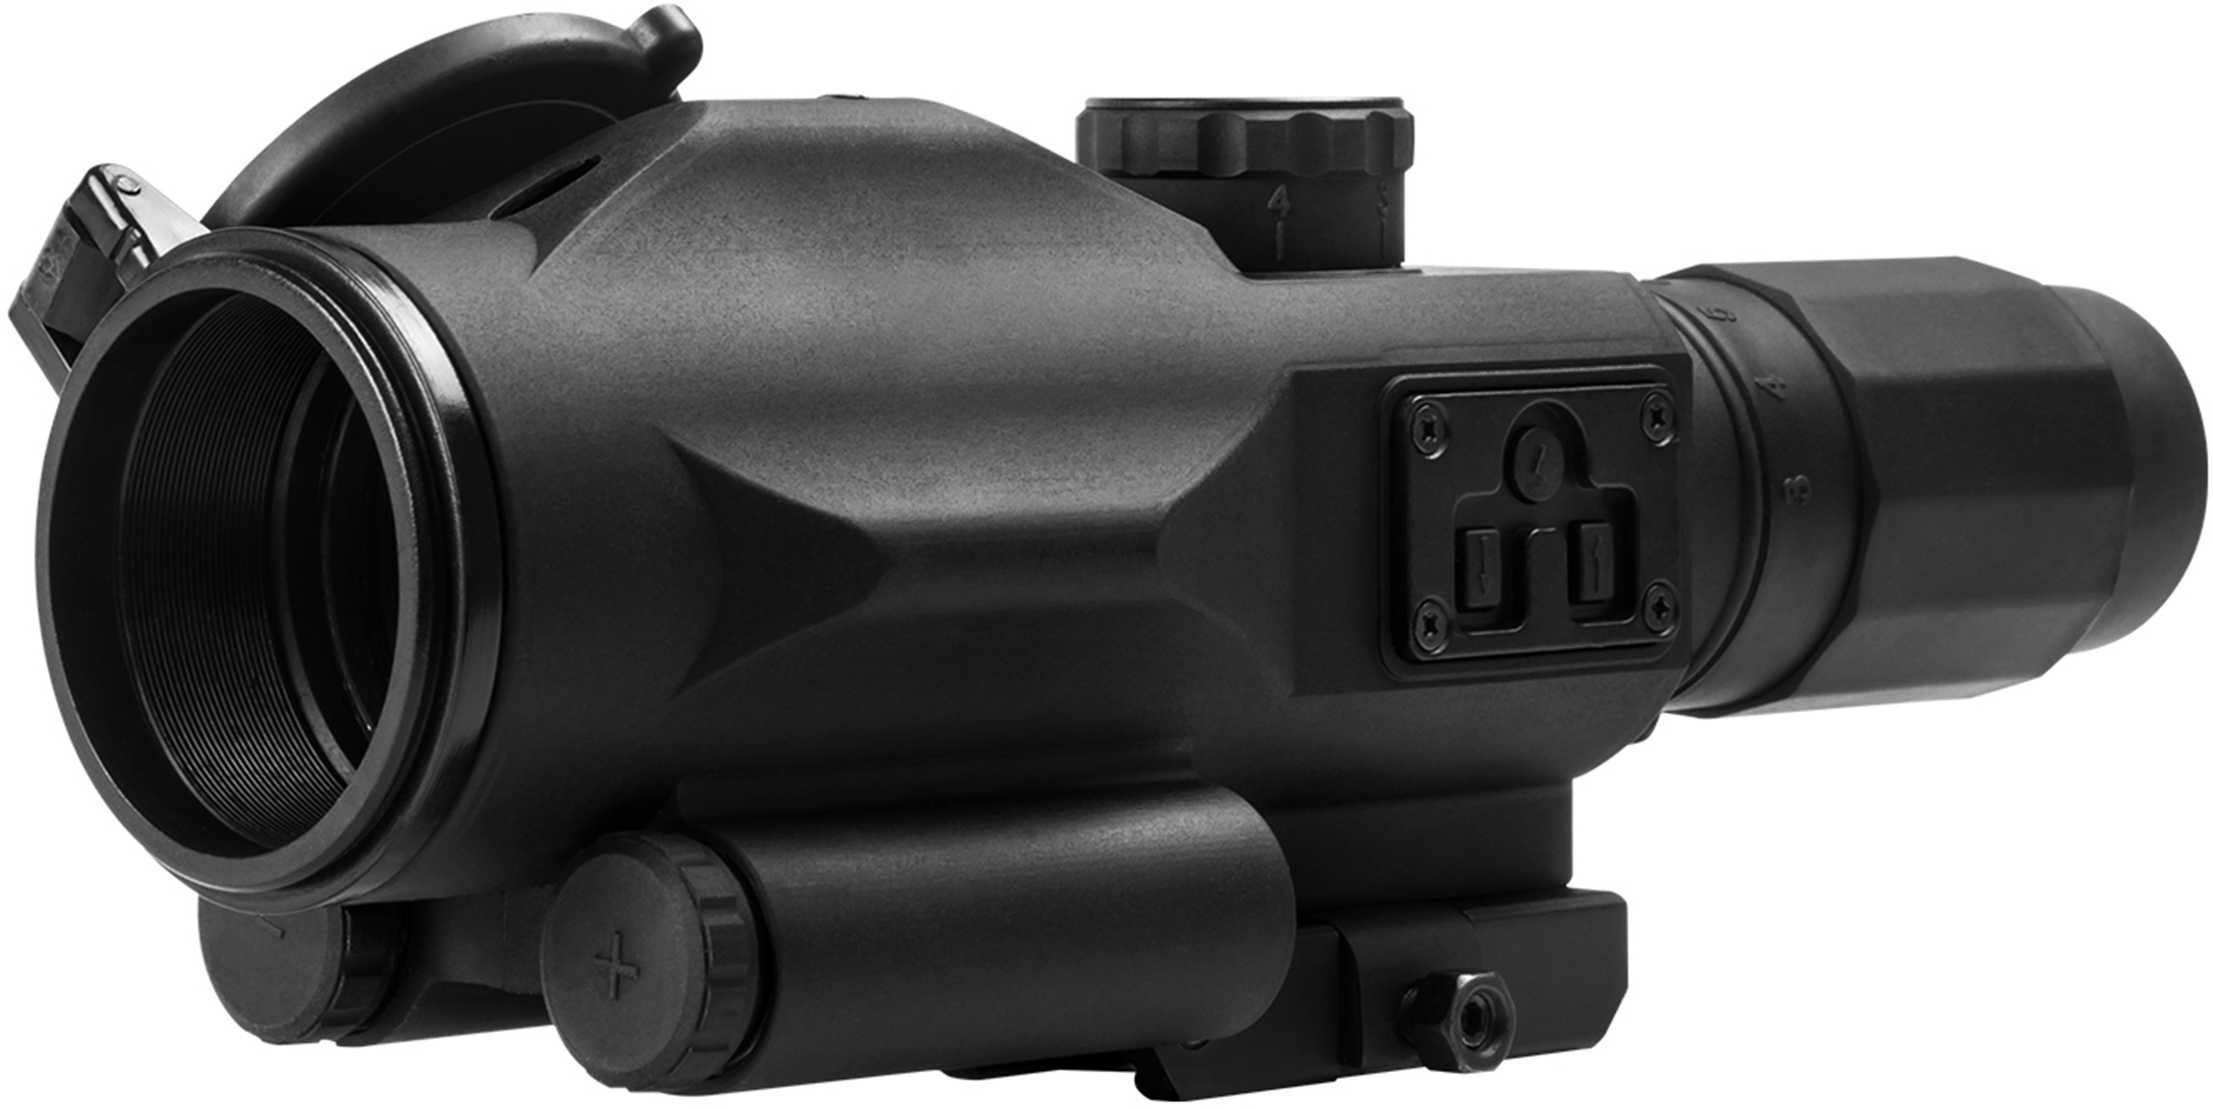 NcStar SRT Scope 3-9x40mm, P4 Sniper Reticle with Green Laser Md: VSRTP3940GV3